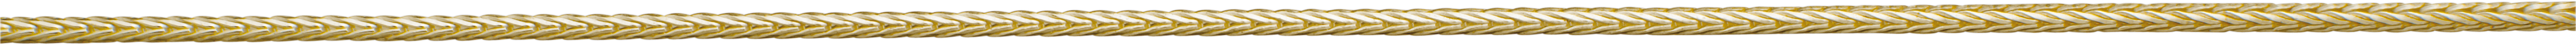 vossestaart ketting goud 585/-gg Ø 1,15mm